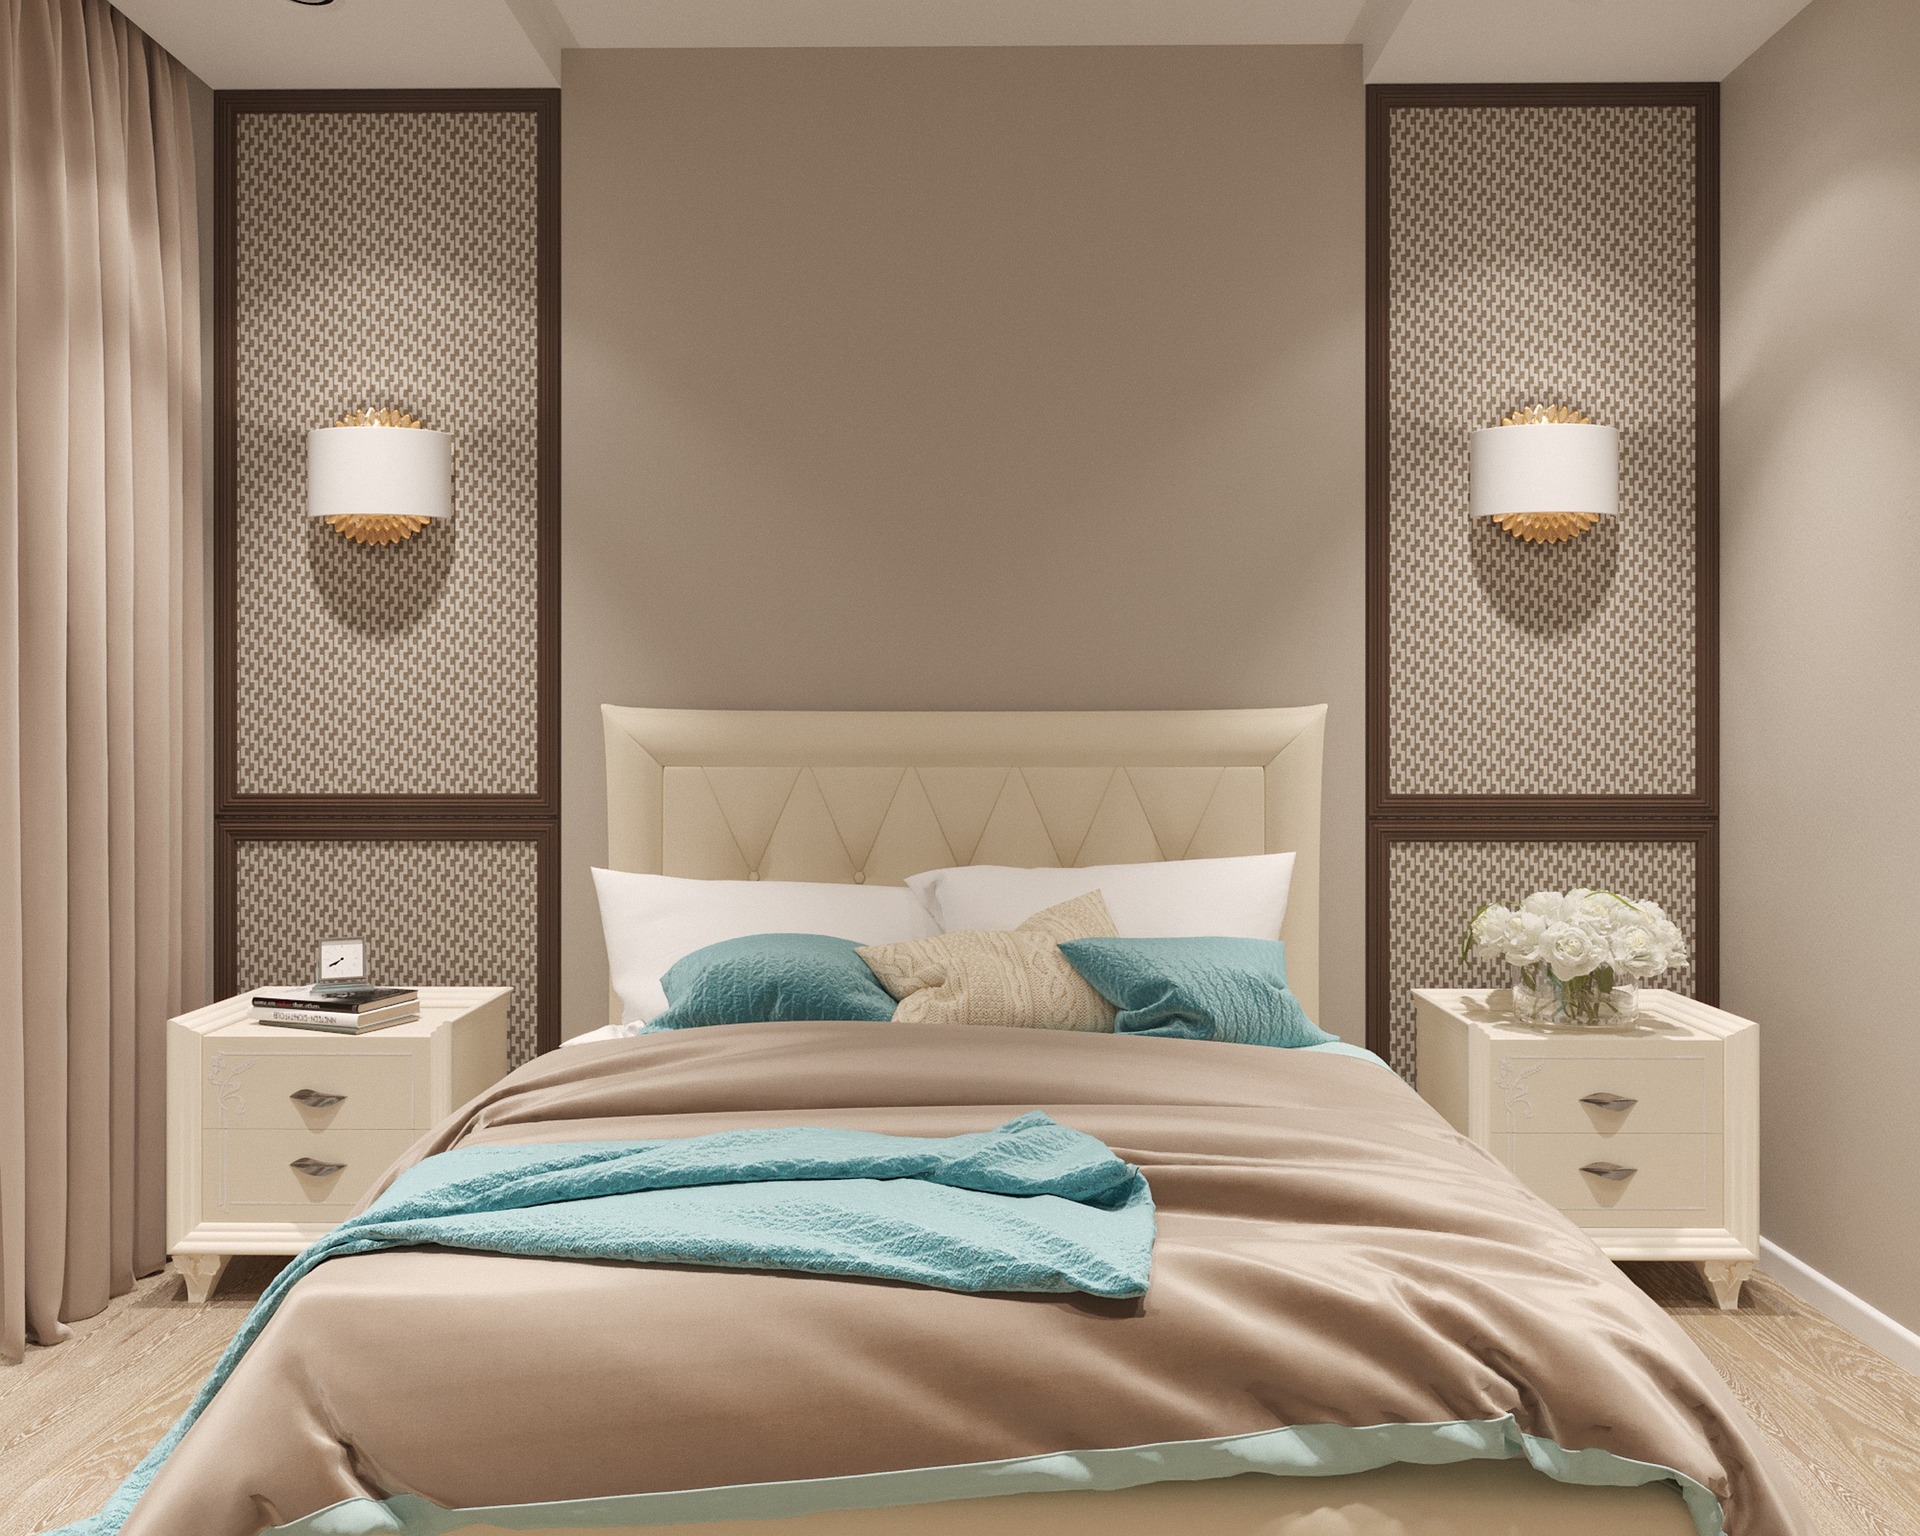 Luxury Bedroom Sets